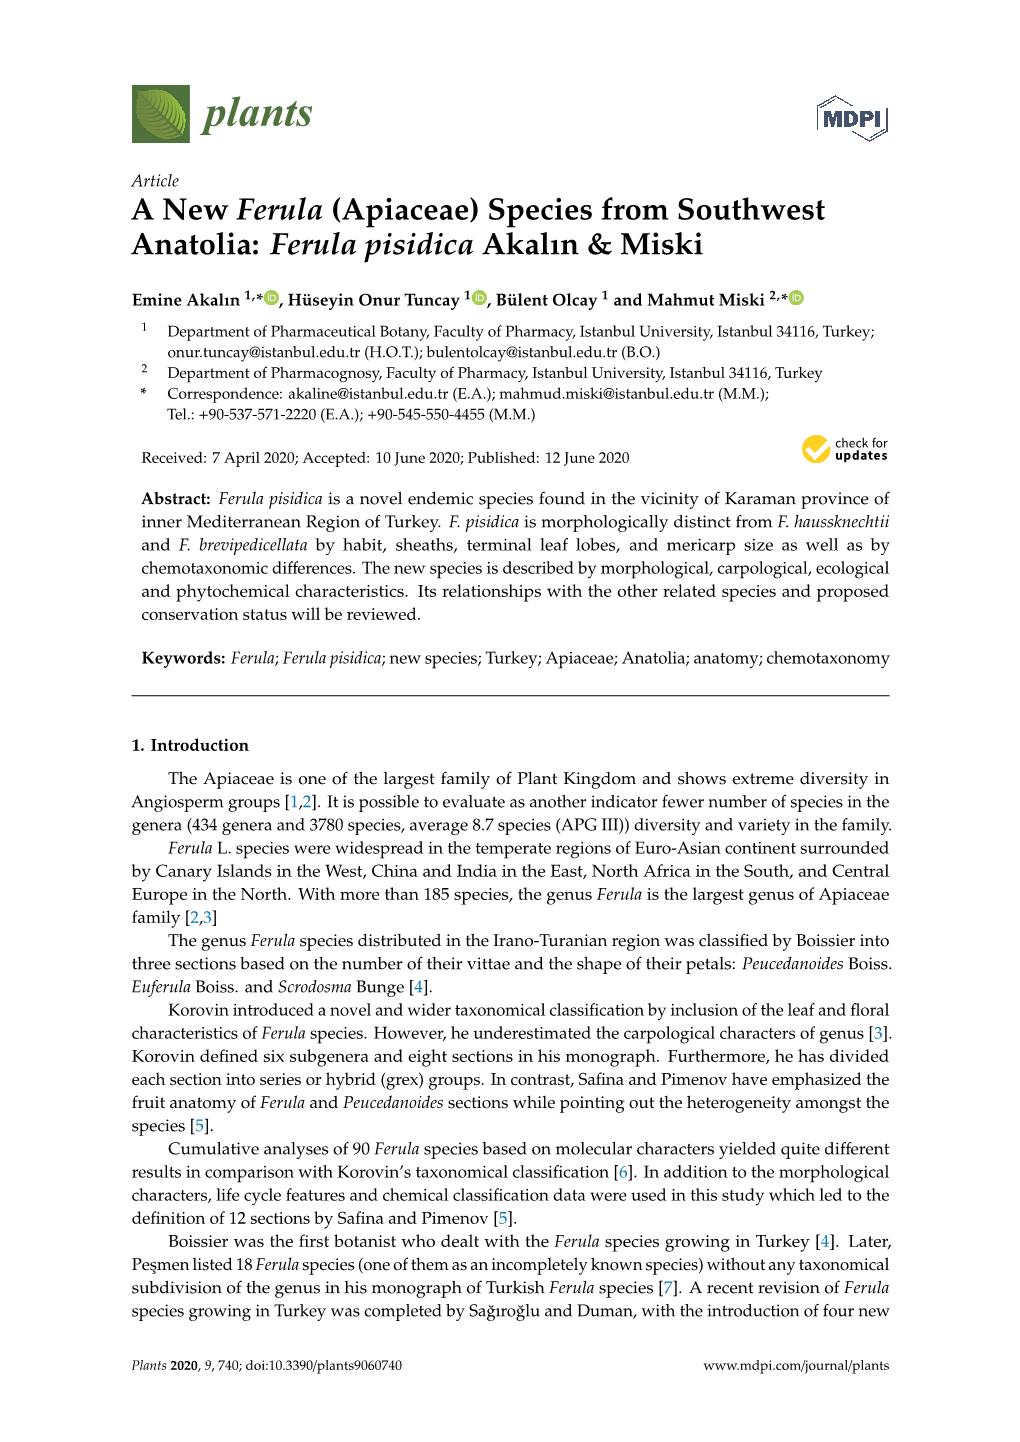 A New Ferula (Apiaceae) Species from Southwest Anatolia: Ferula Pisidica Akalın & Miski